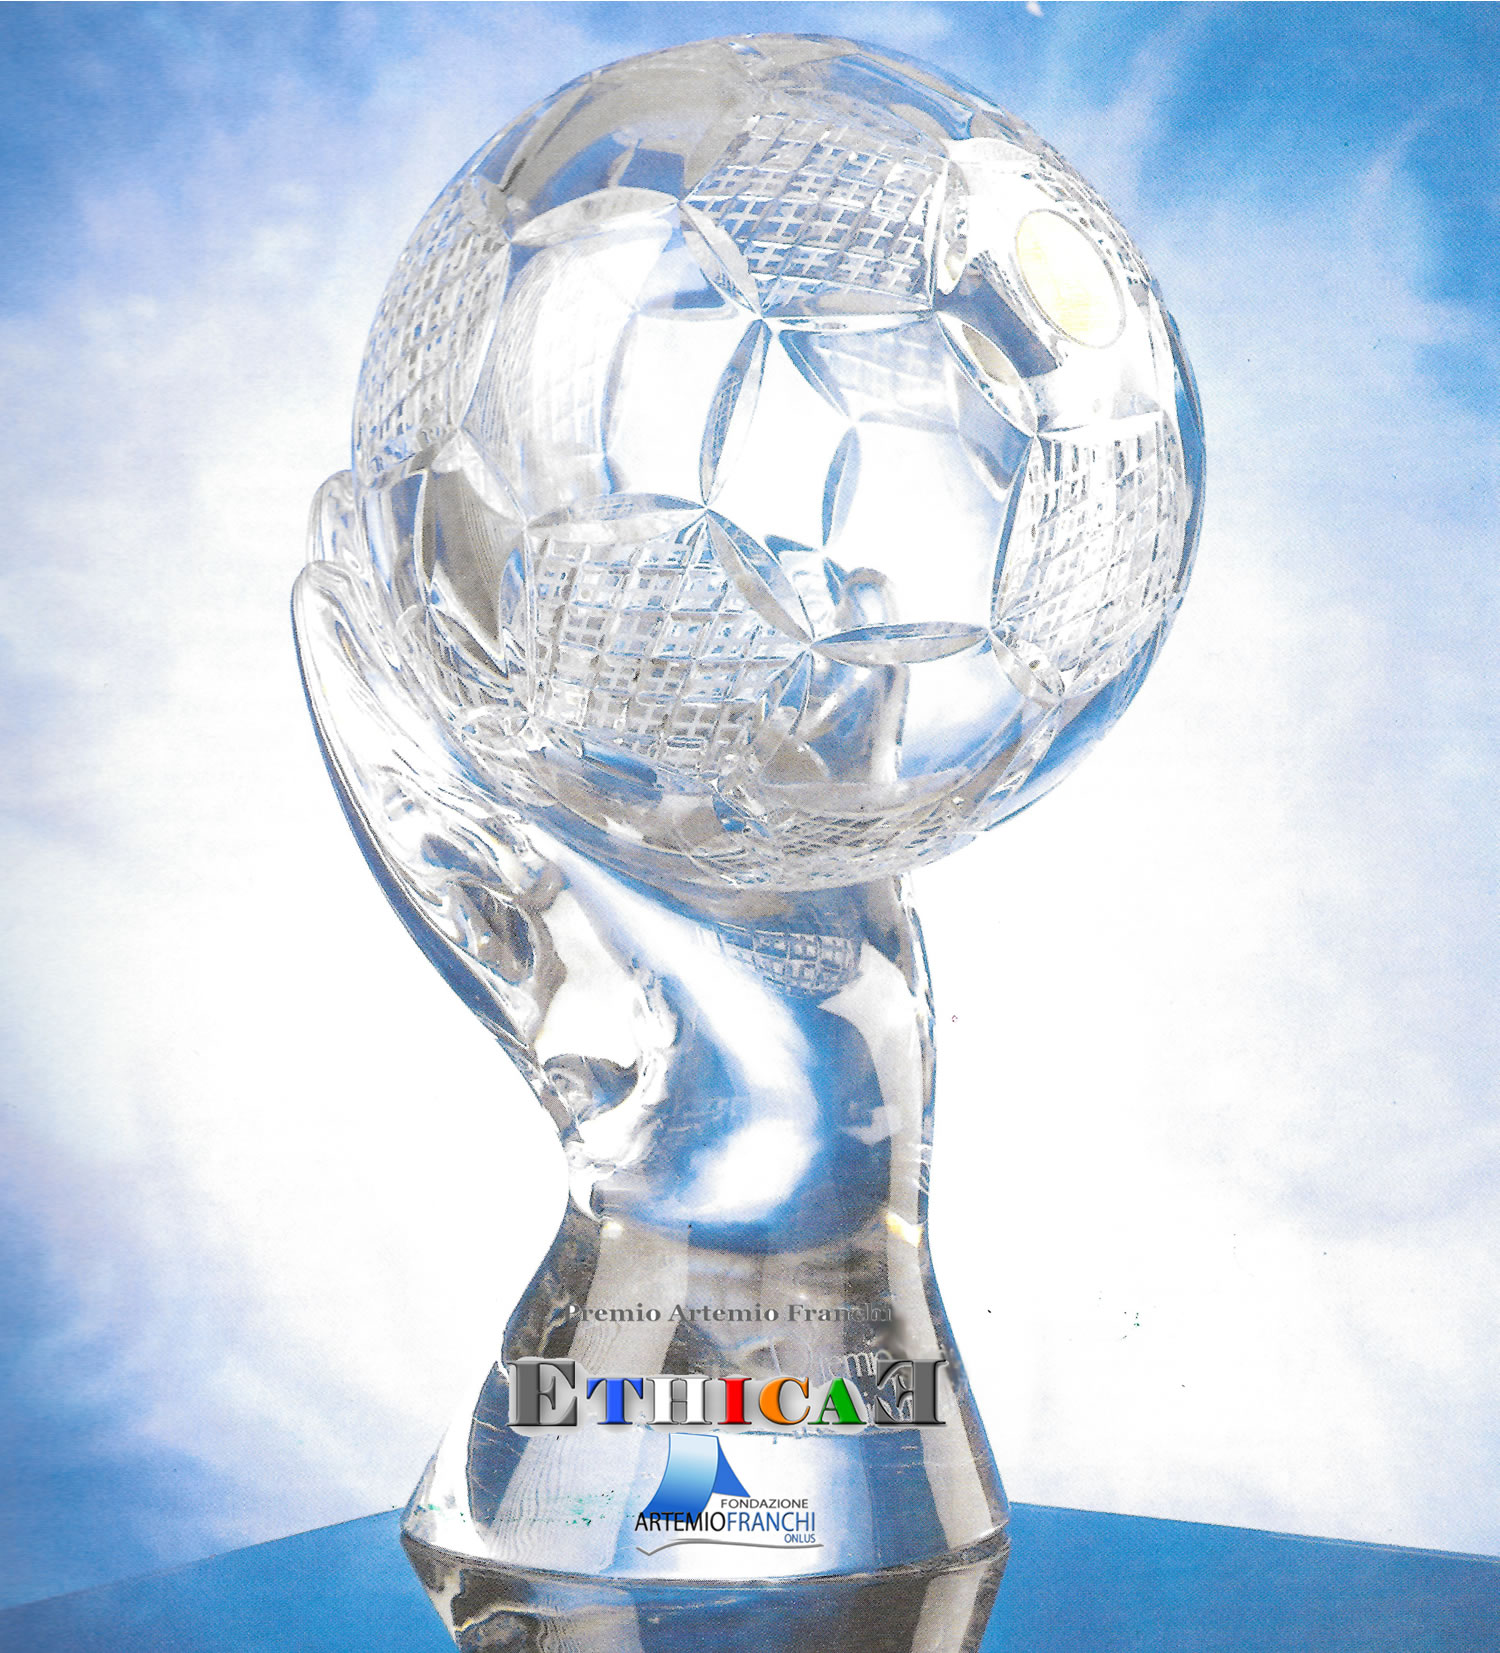 Il premio ethicae della fondazione artemio franchi onlus rappresentato da un pallone di cristallo